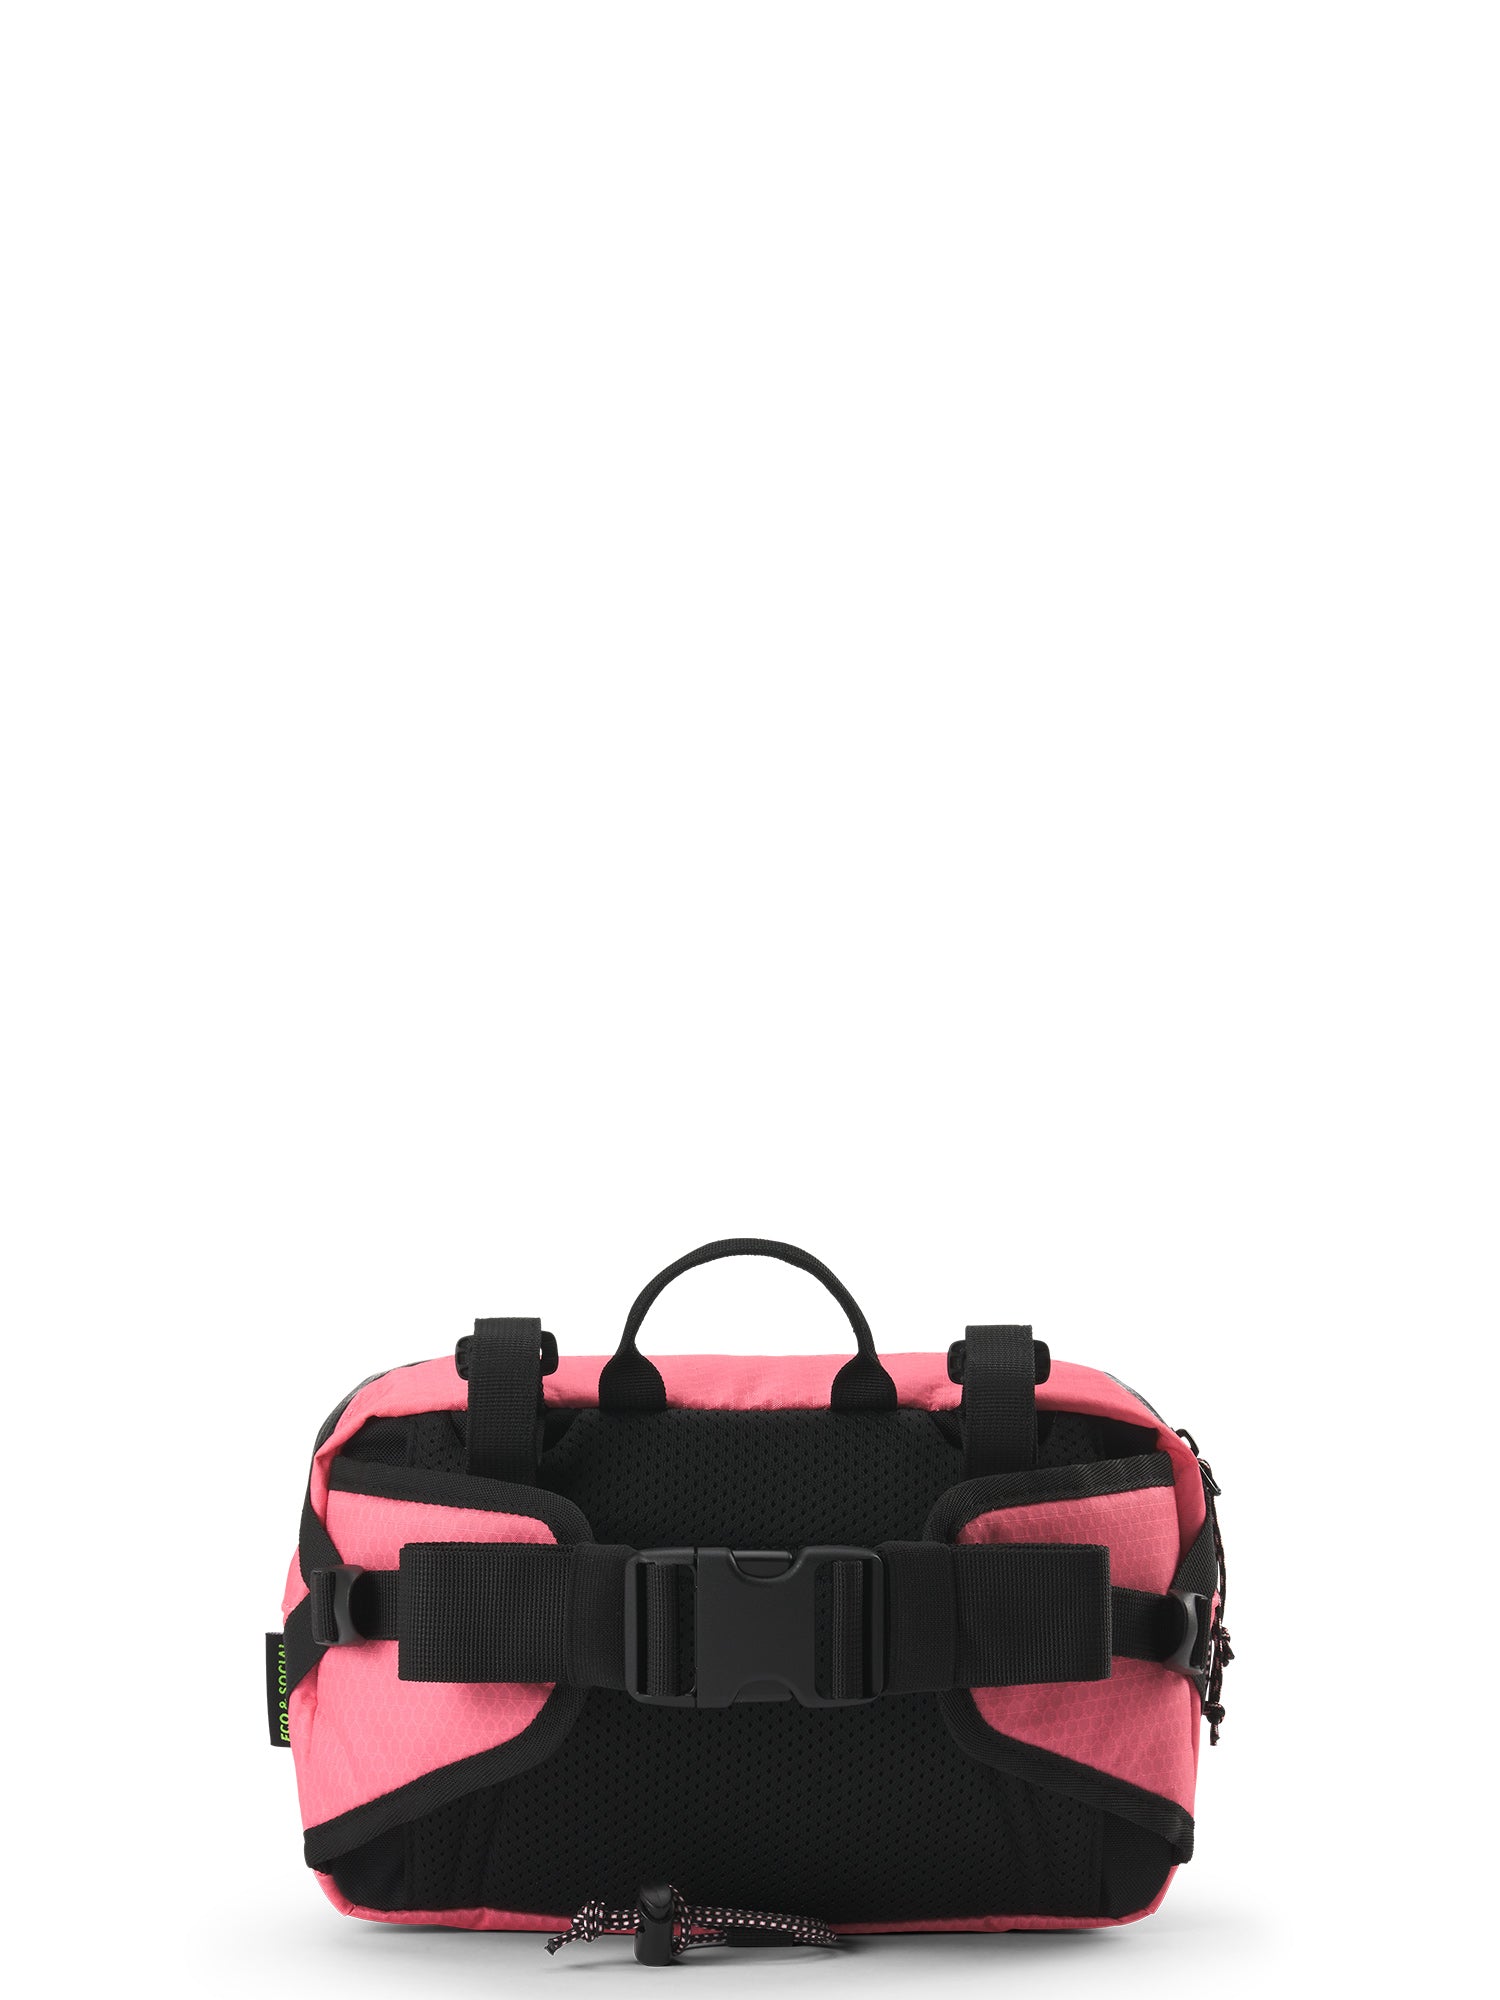 AEVOR Bar Bag Lenkertasche / GIRO SONDERMODELL - Proof Pink Flash